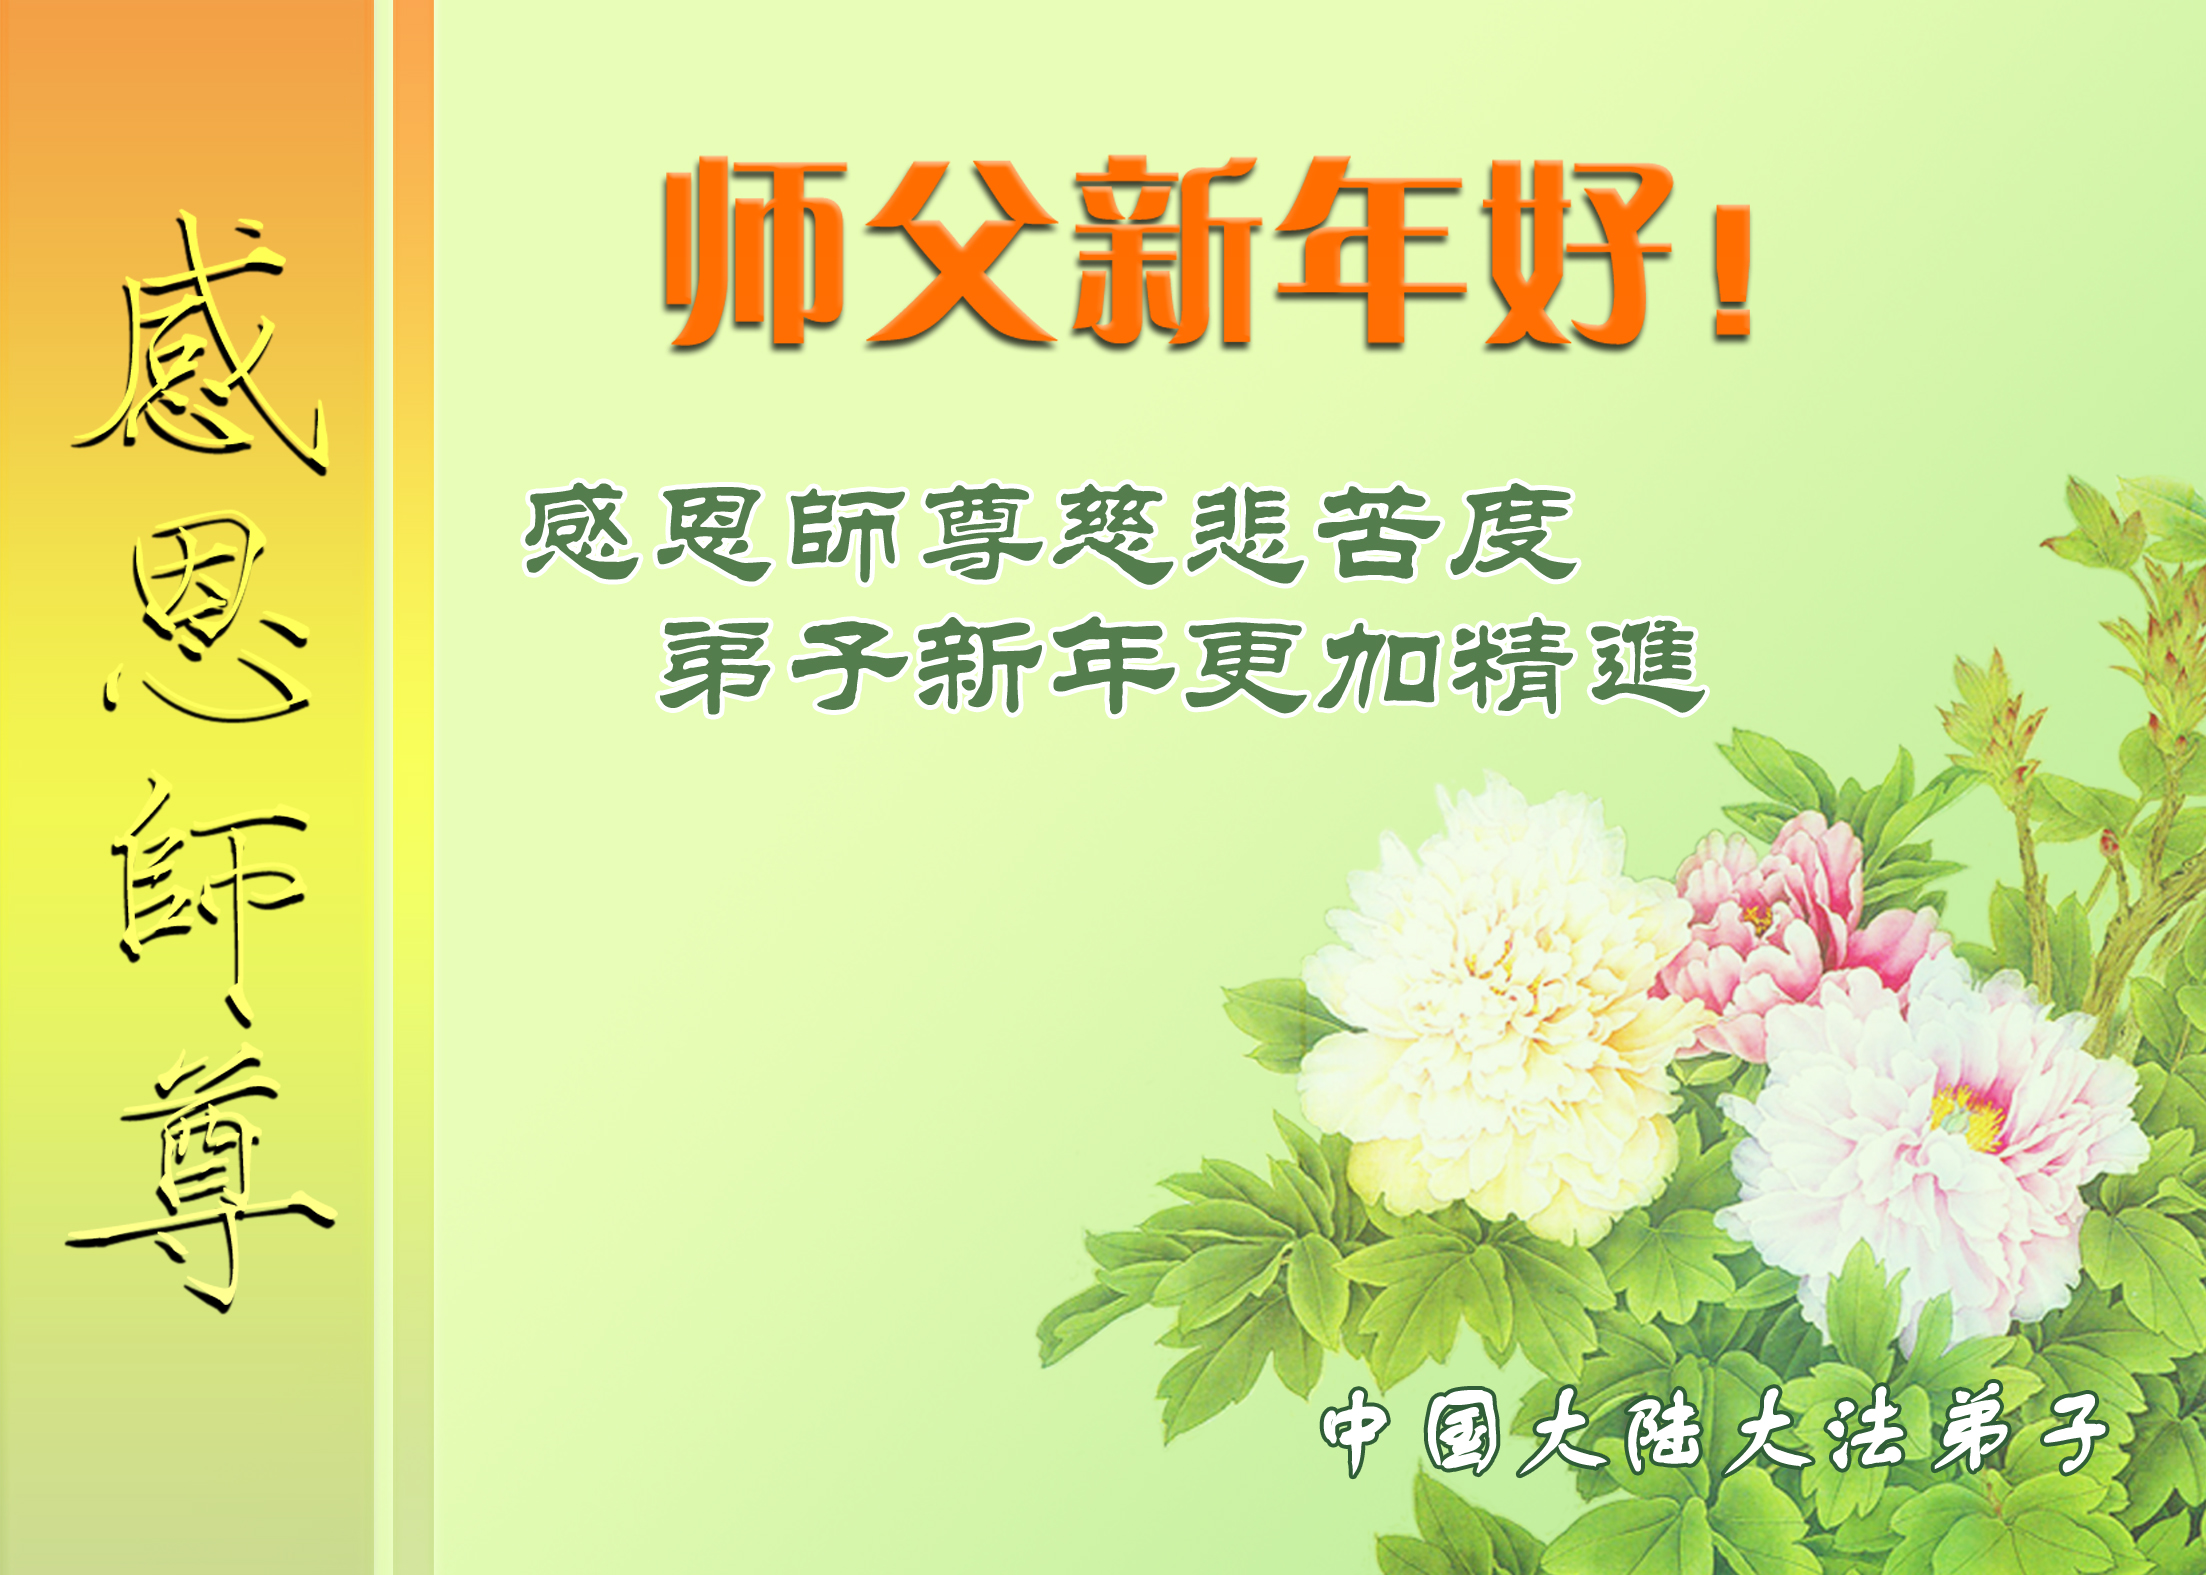 Image for article De pratiquants de Falun Dafa en Chine souhaitent respectueusement au vénérable Maître Li Hongzhi une Bonne et Heureuse Année !